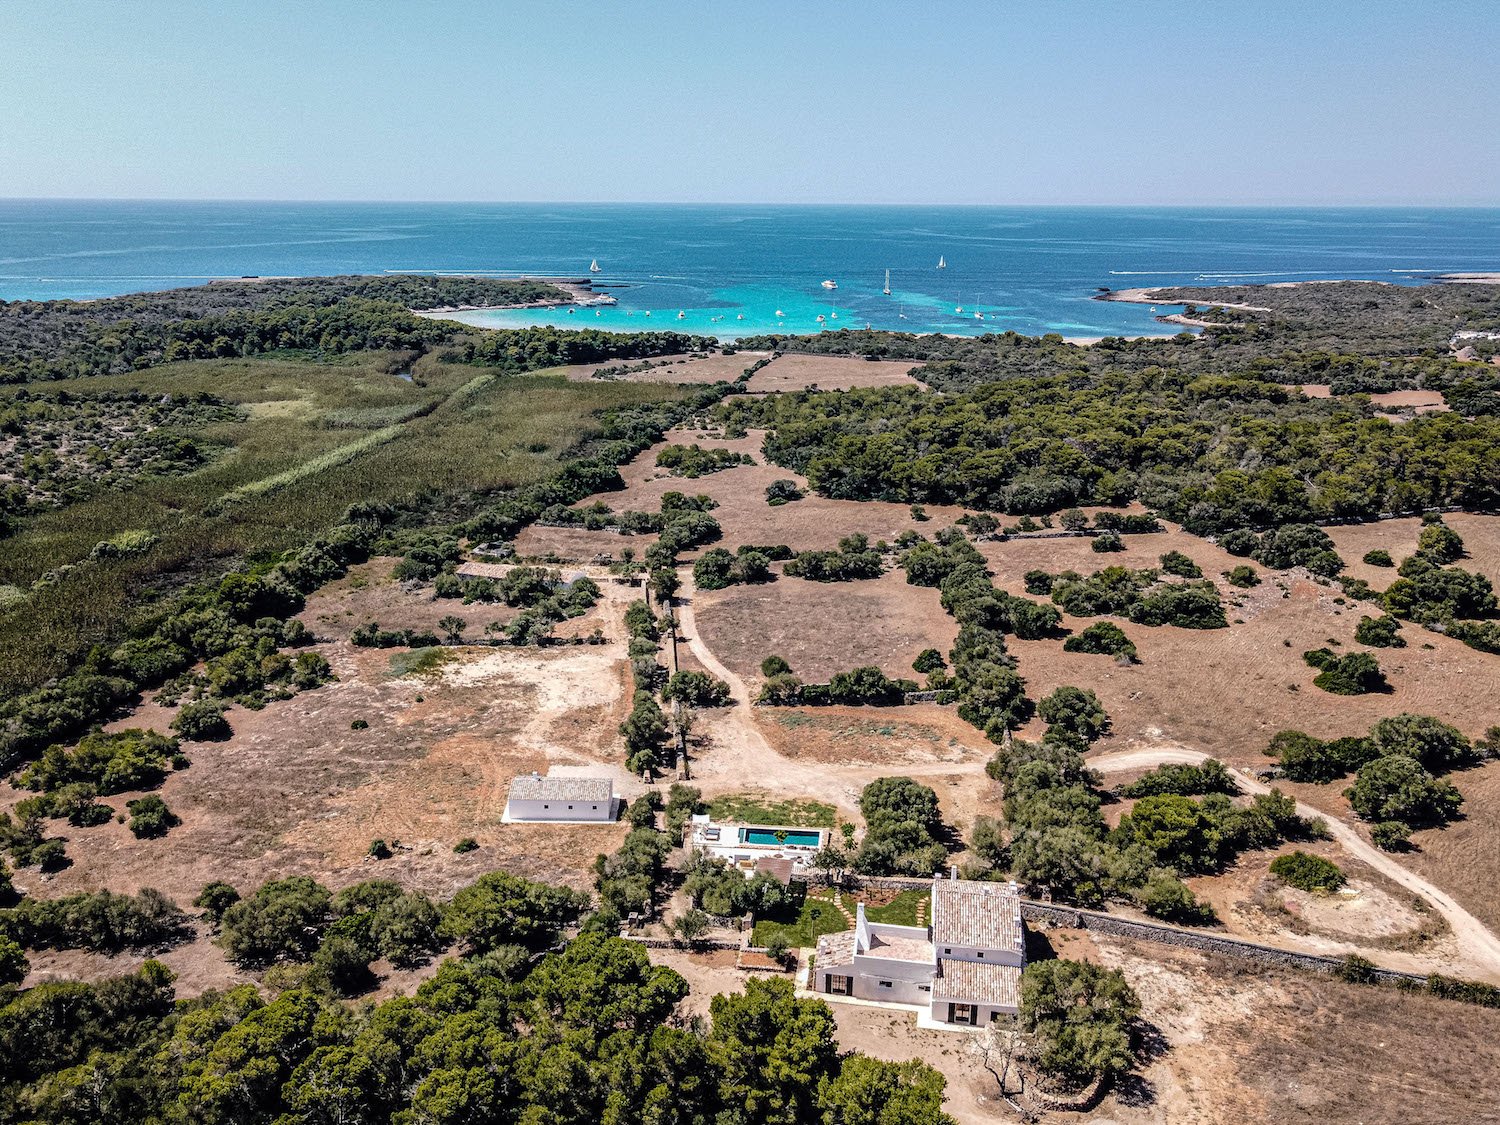 Luxury villa in Menorca, Spain in the Balearic Islands